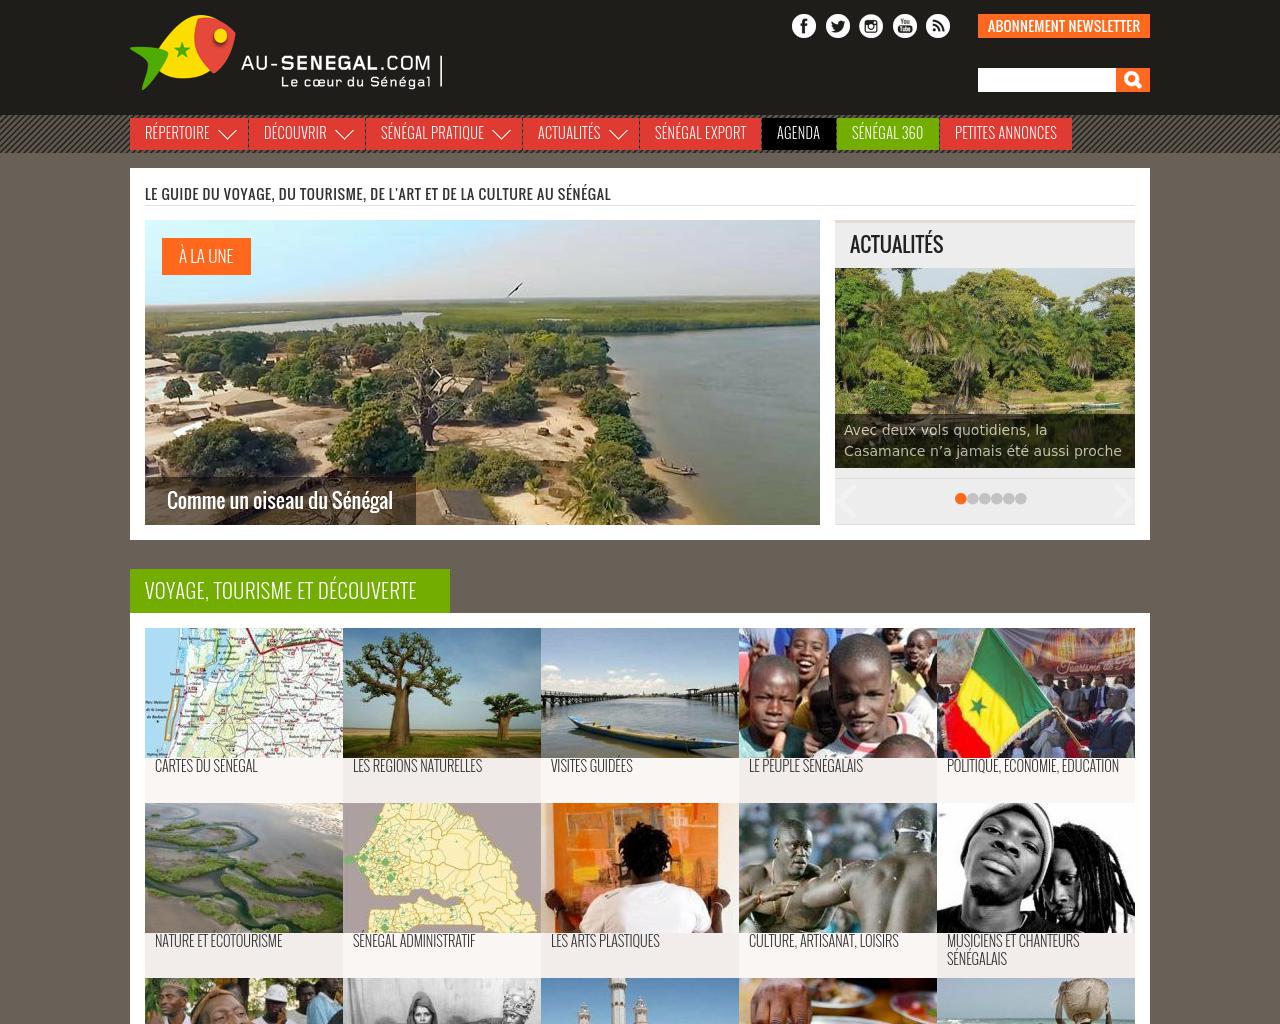 Au-Senegal.com